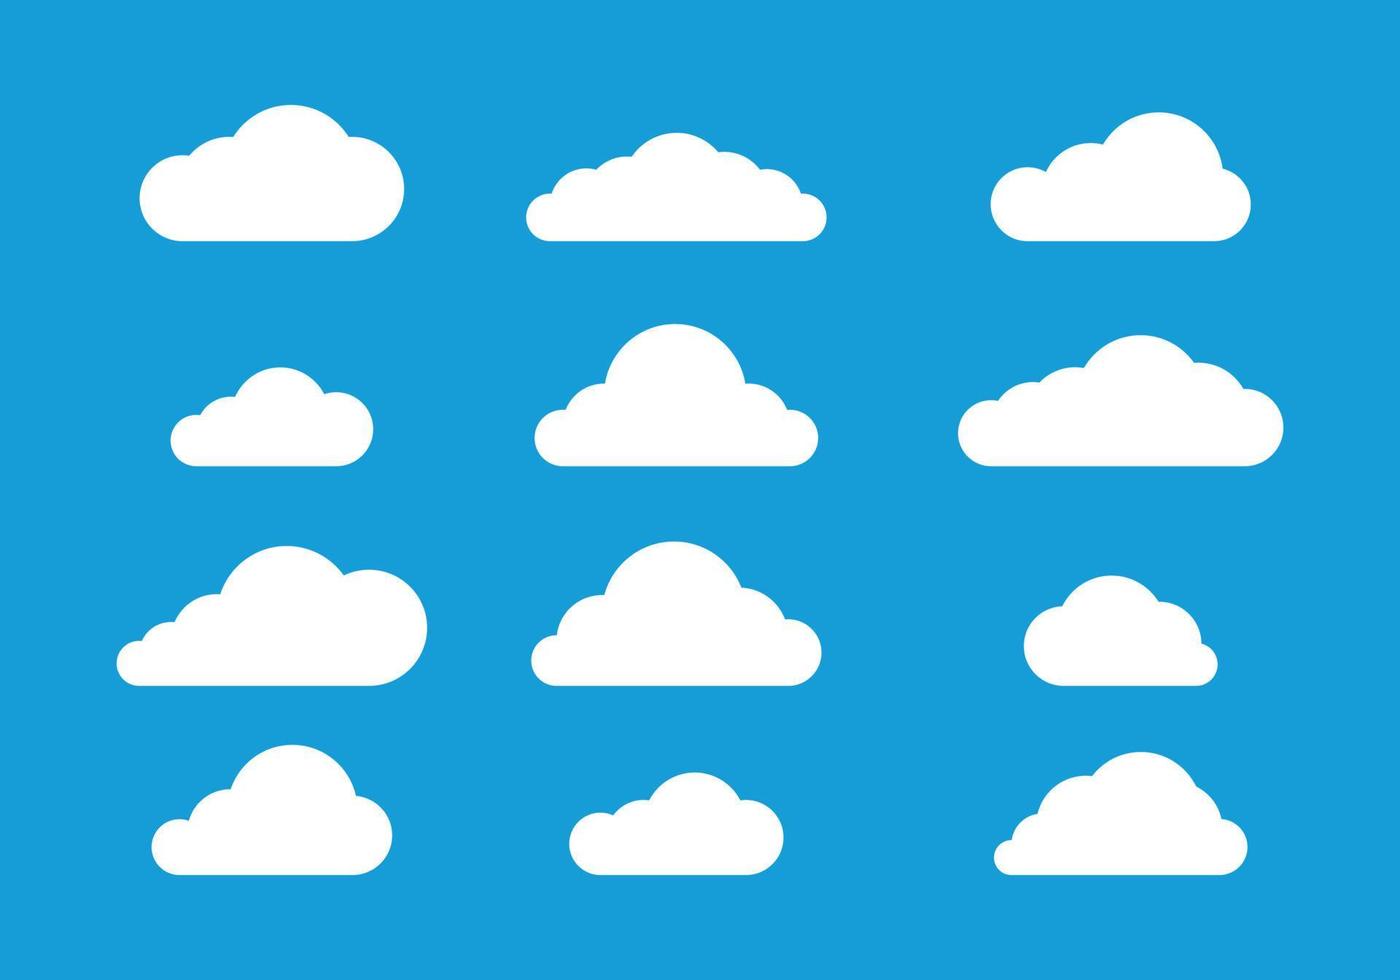 flaches Wolkendesign auf blauem Hintergrund, Symbolwolken-Vektorsatz, Grafik bewölkt vektor